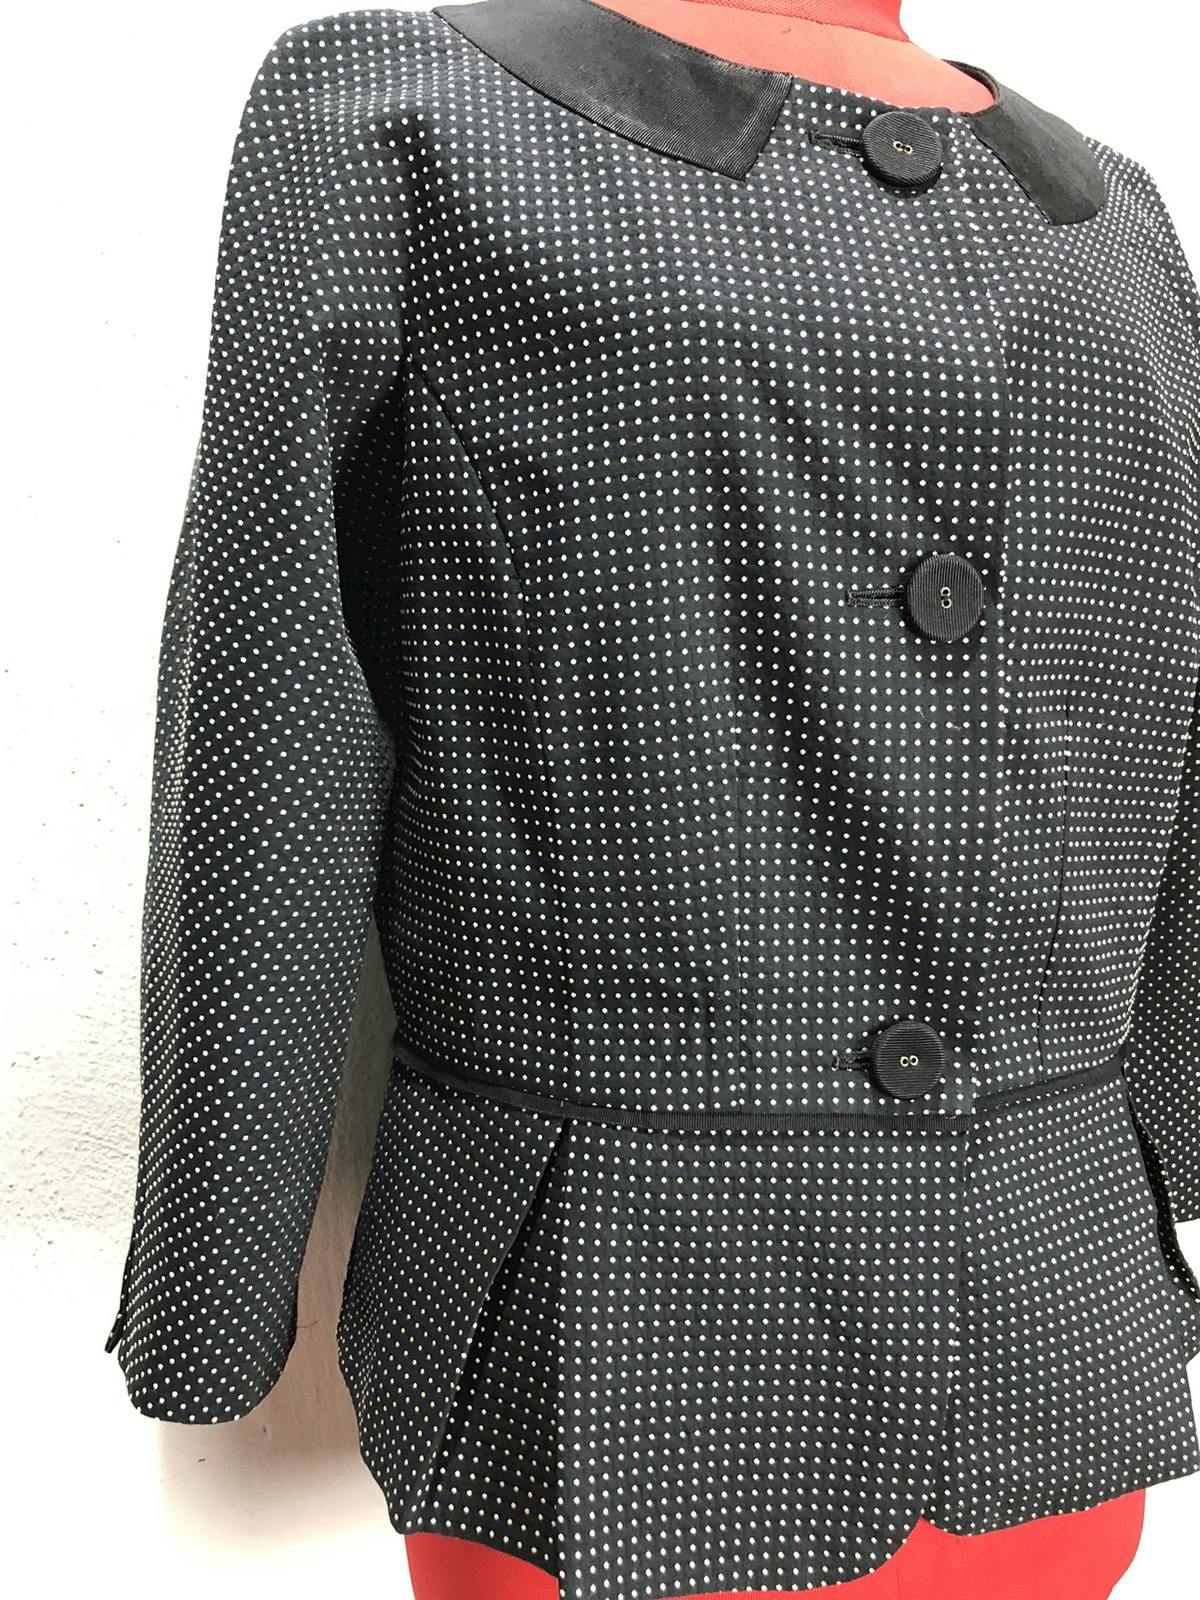 Lanvin blazer/jacket nice design - 6